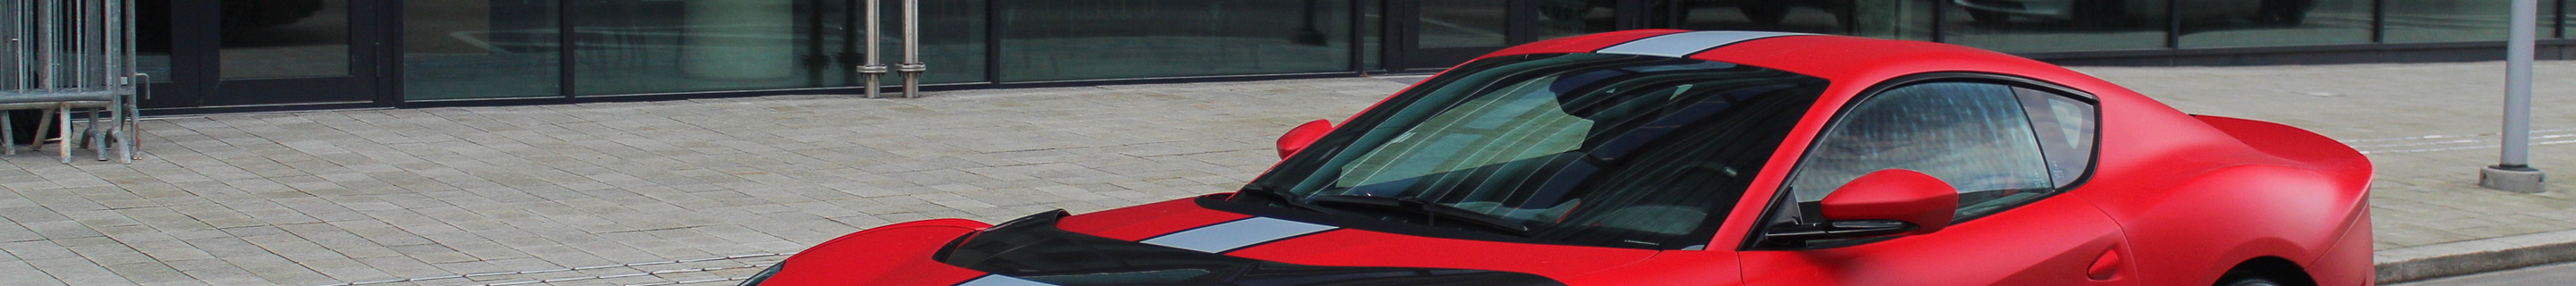 Ferrari 812 Competizione